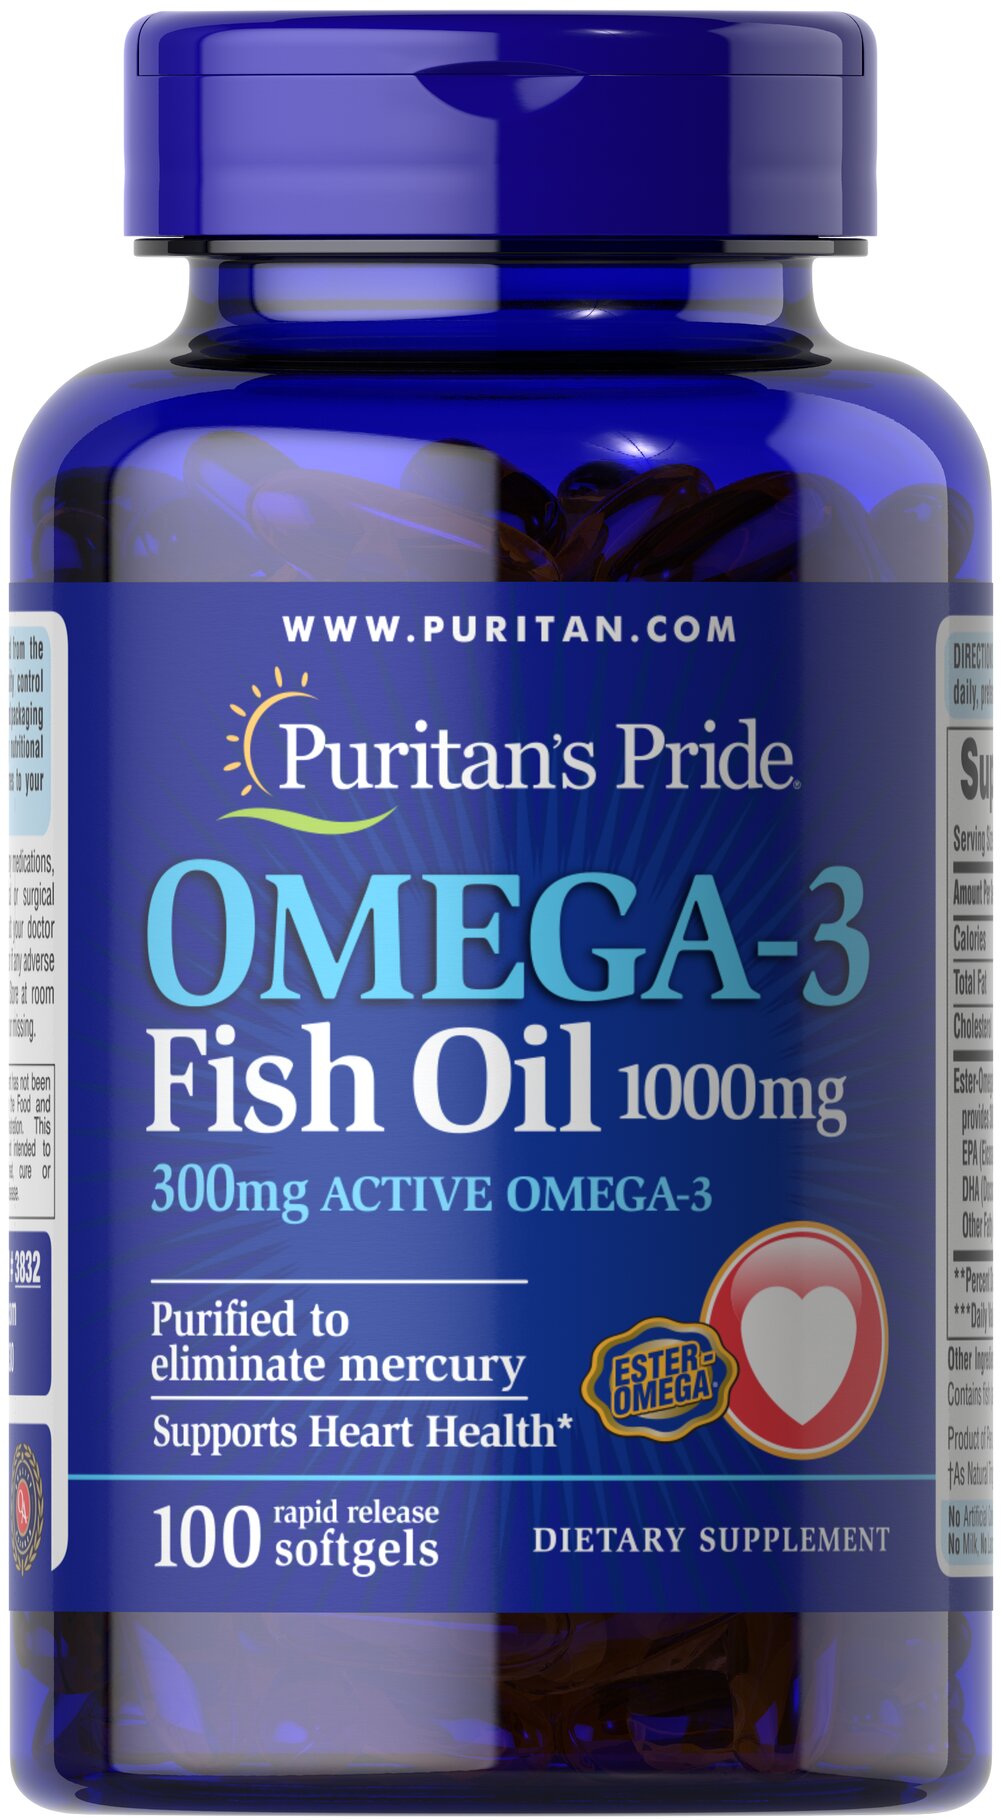 Omega-3 魚油 1000 MG（300MG 活性Omega-3）